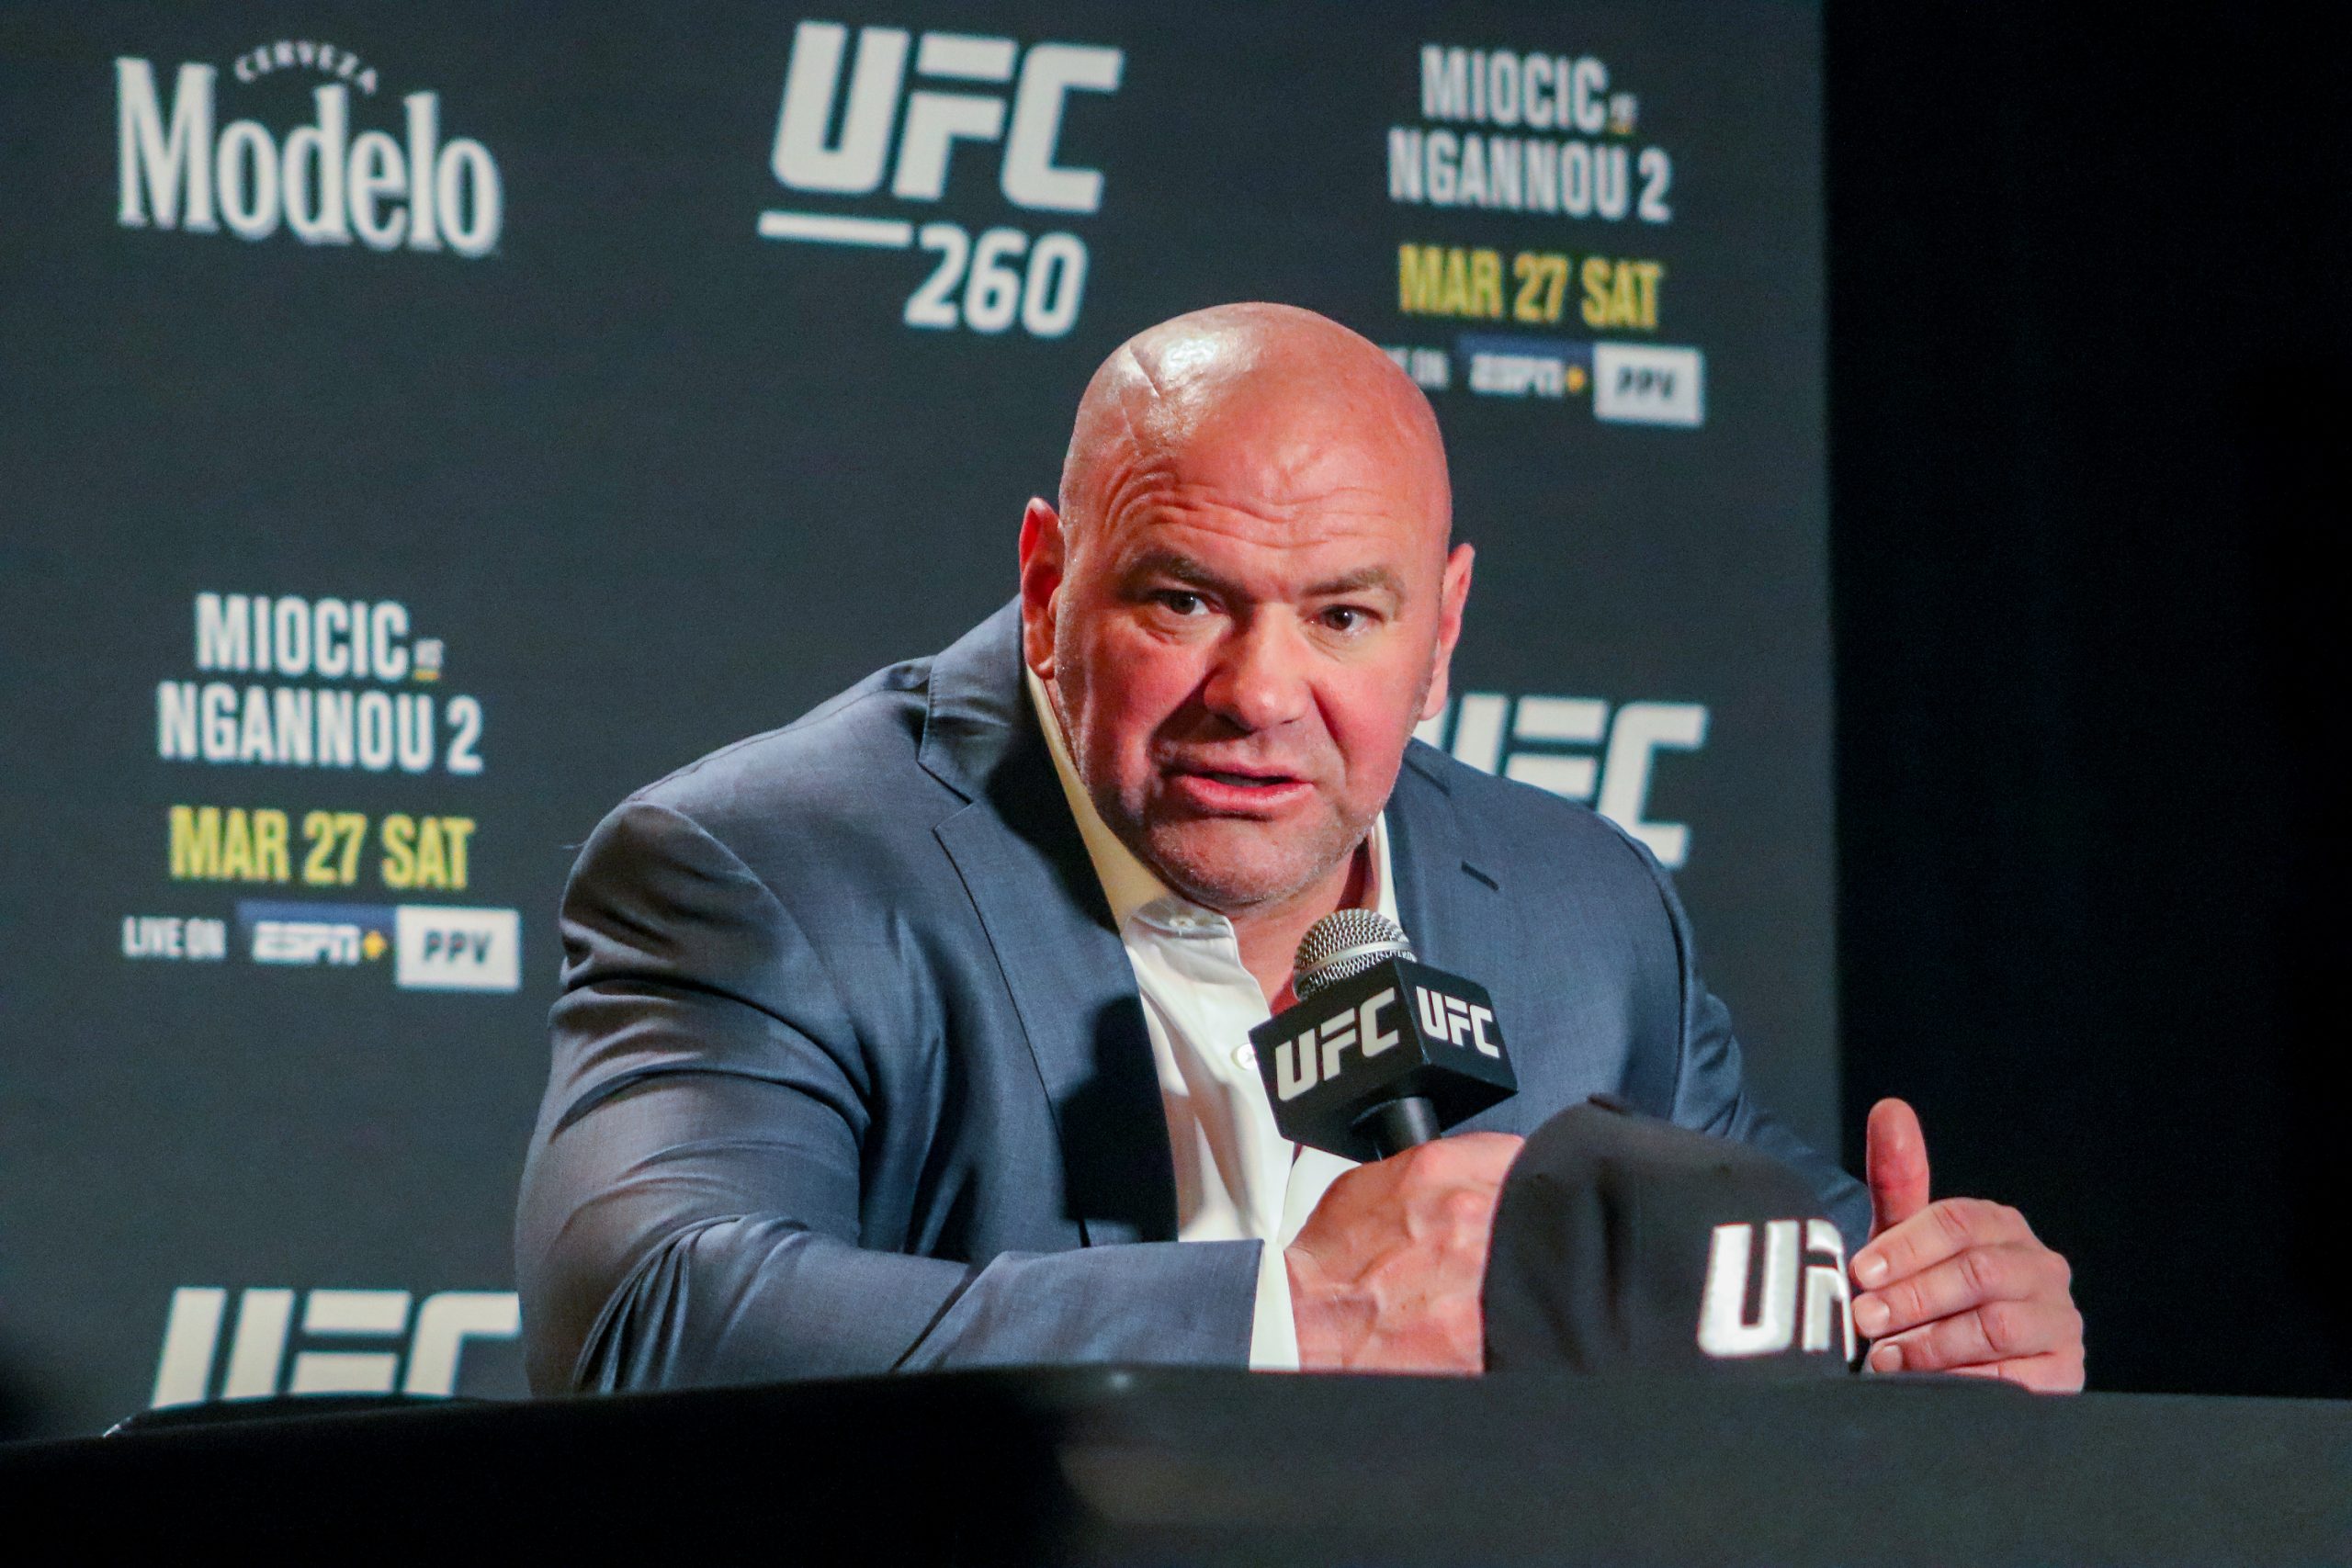 Dana critica treinador de Diego Sanchez após UFC liberar o lutador: “Ele é maluco”